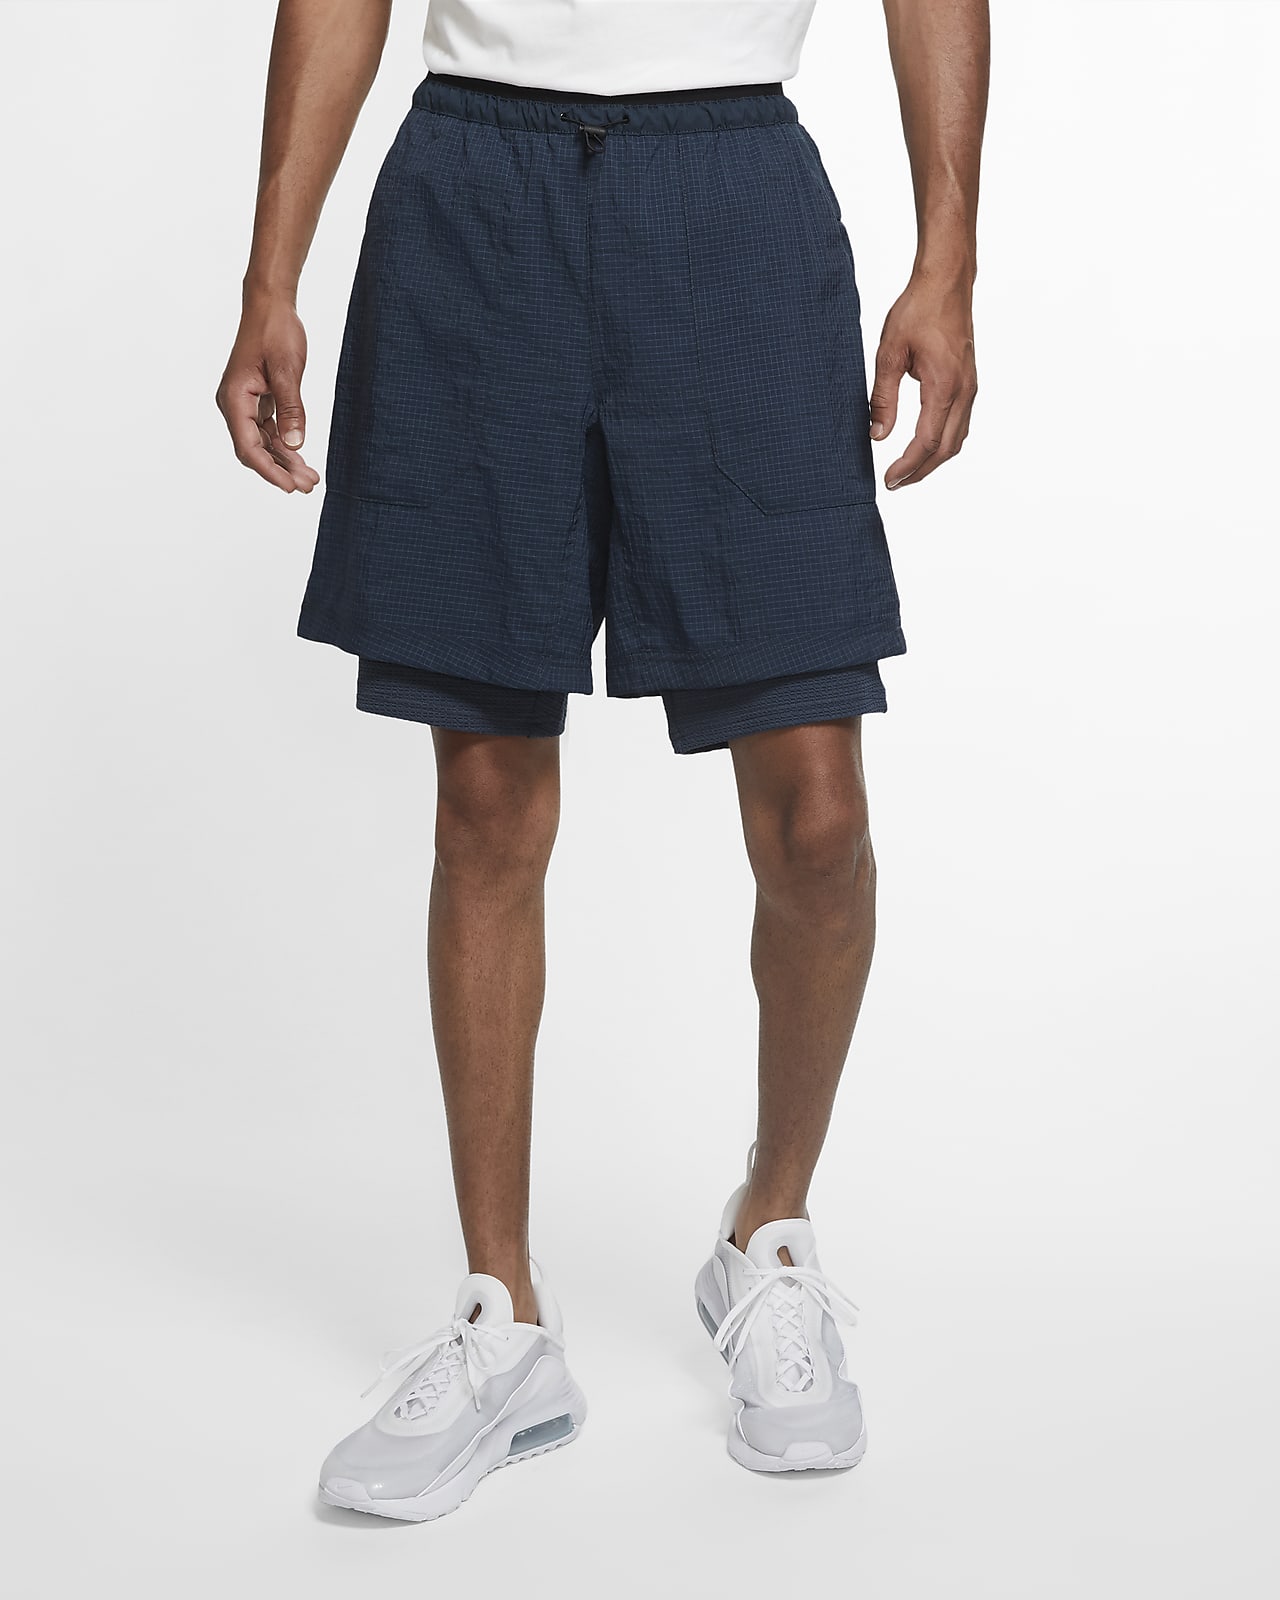 Download Nike Sportswear Tech Pack Men's Woven Shorts. Nike.com